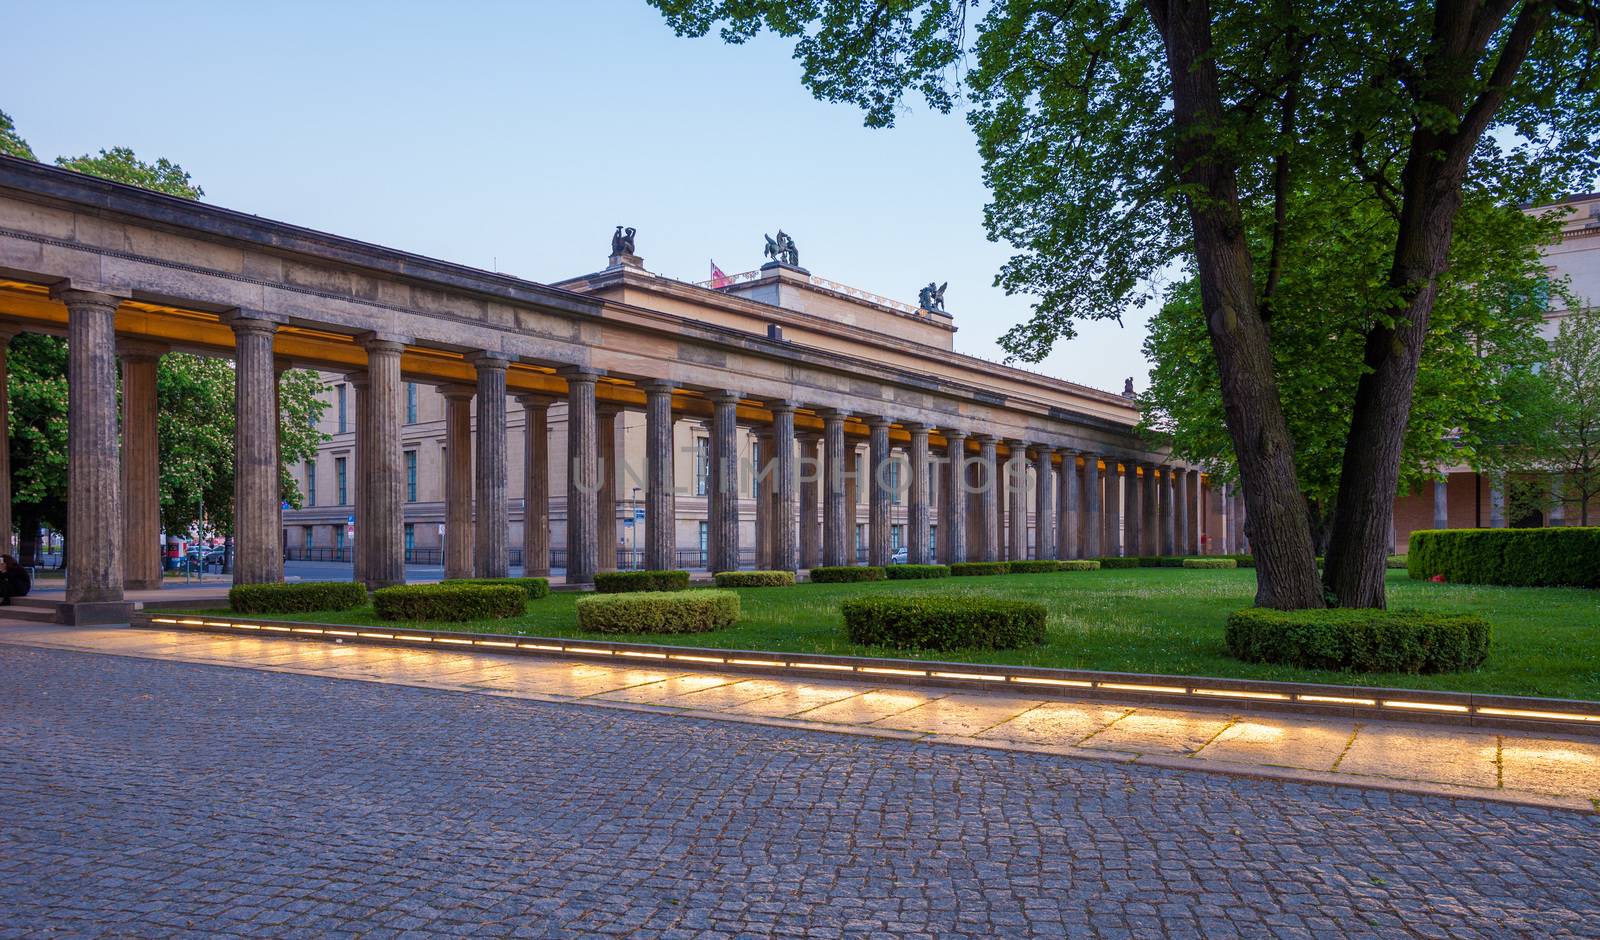 Garden, Alte Nationalgalerie, Berlin by edan